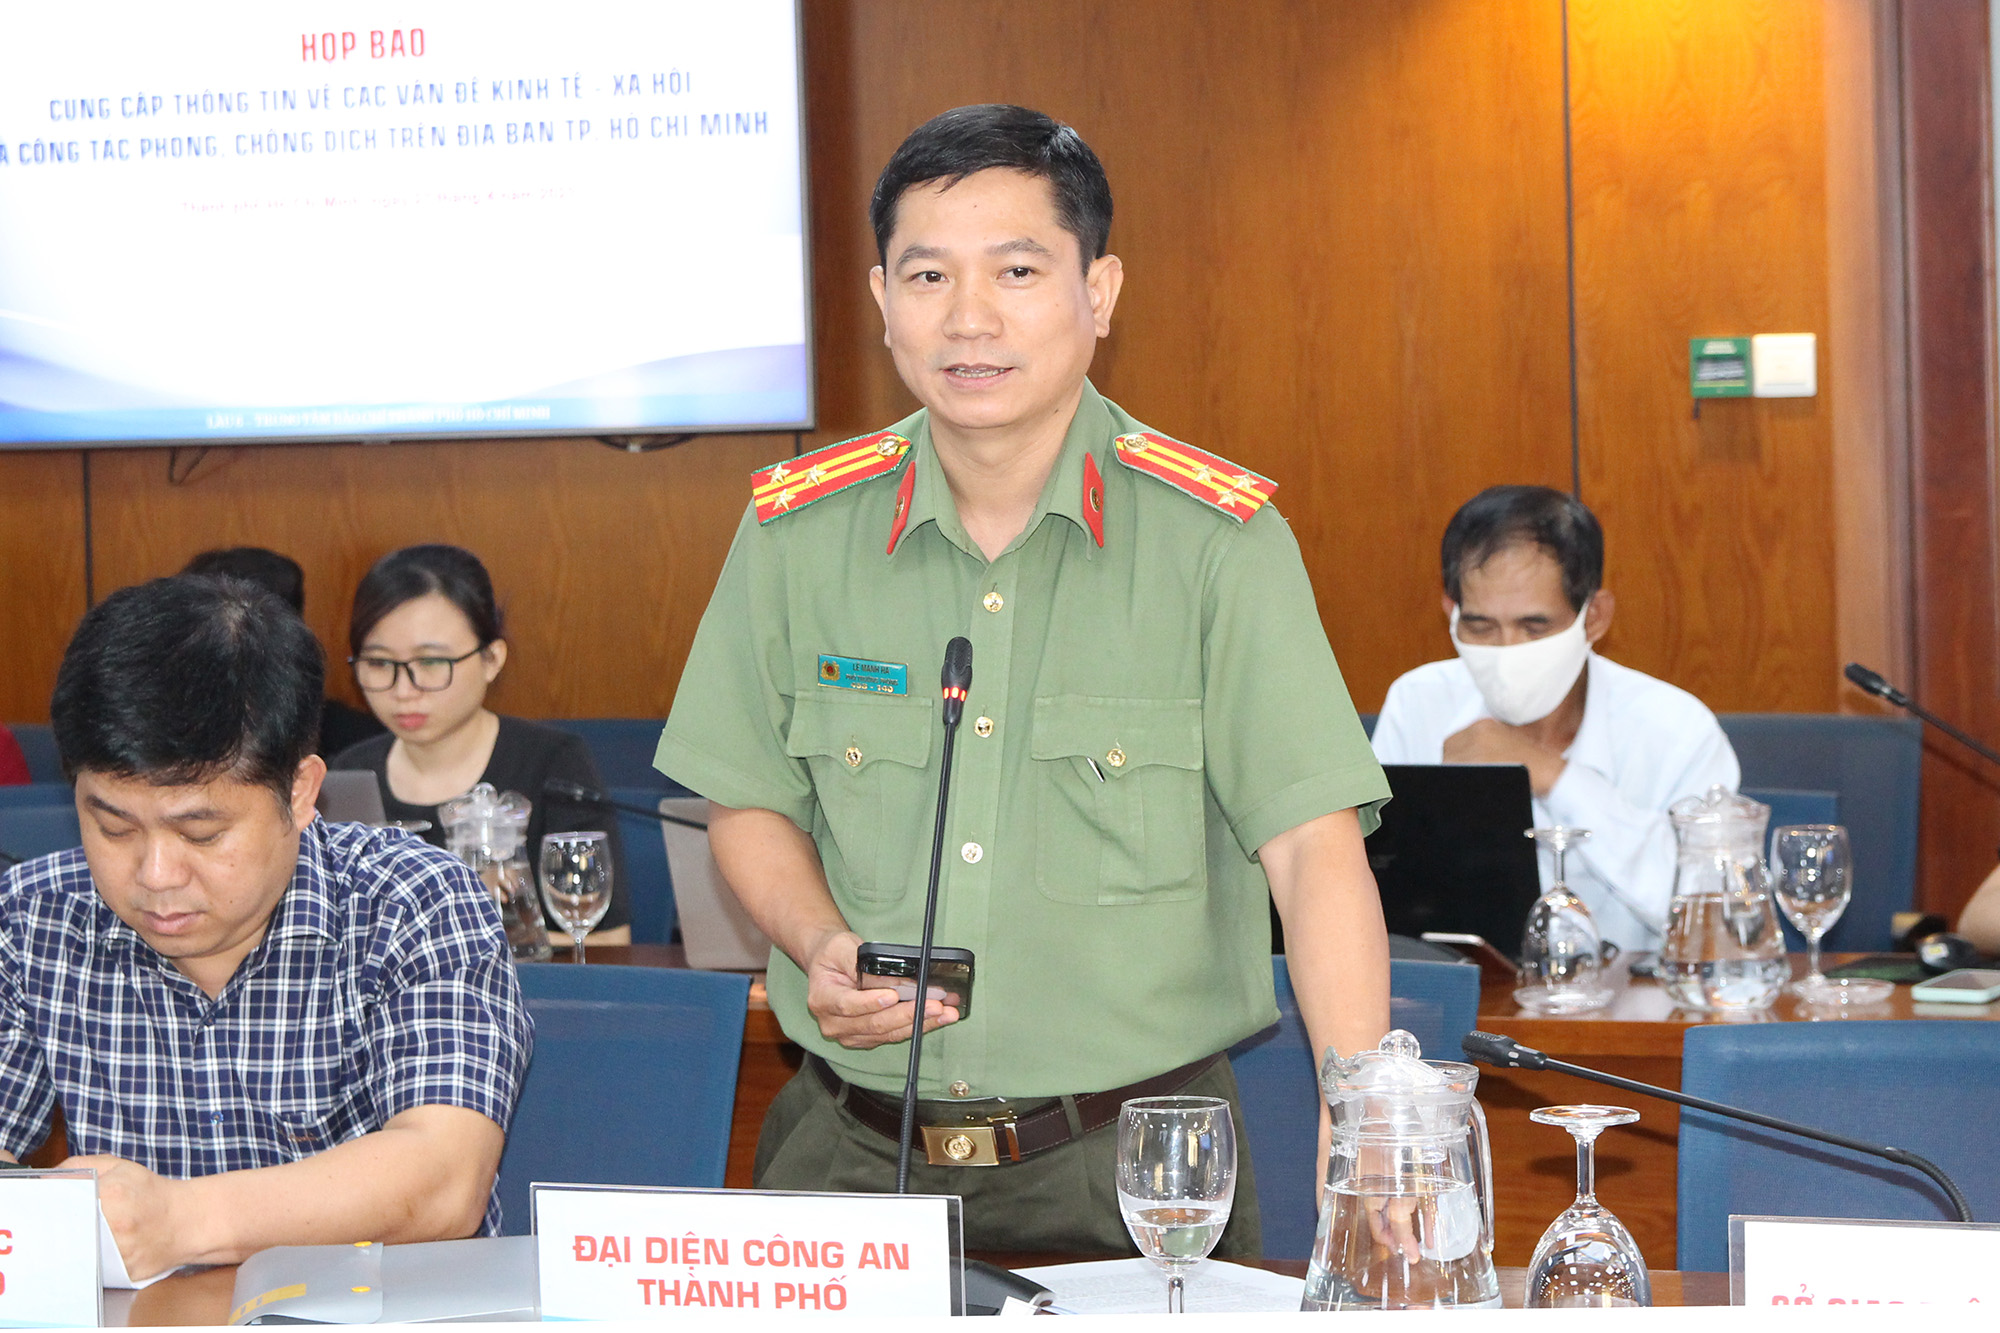 Đồng chí Lê Mạnh Hà, Phó Trưởng Phòng Tham mưu Công an Thành phố phát biểu tại buổi họp báo (Ảnh: H.Hào).